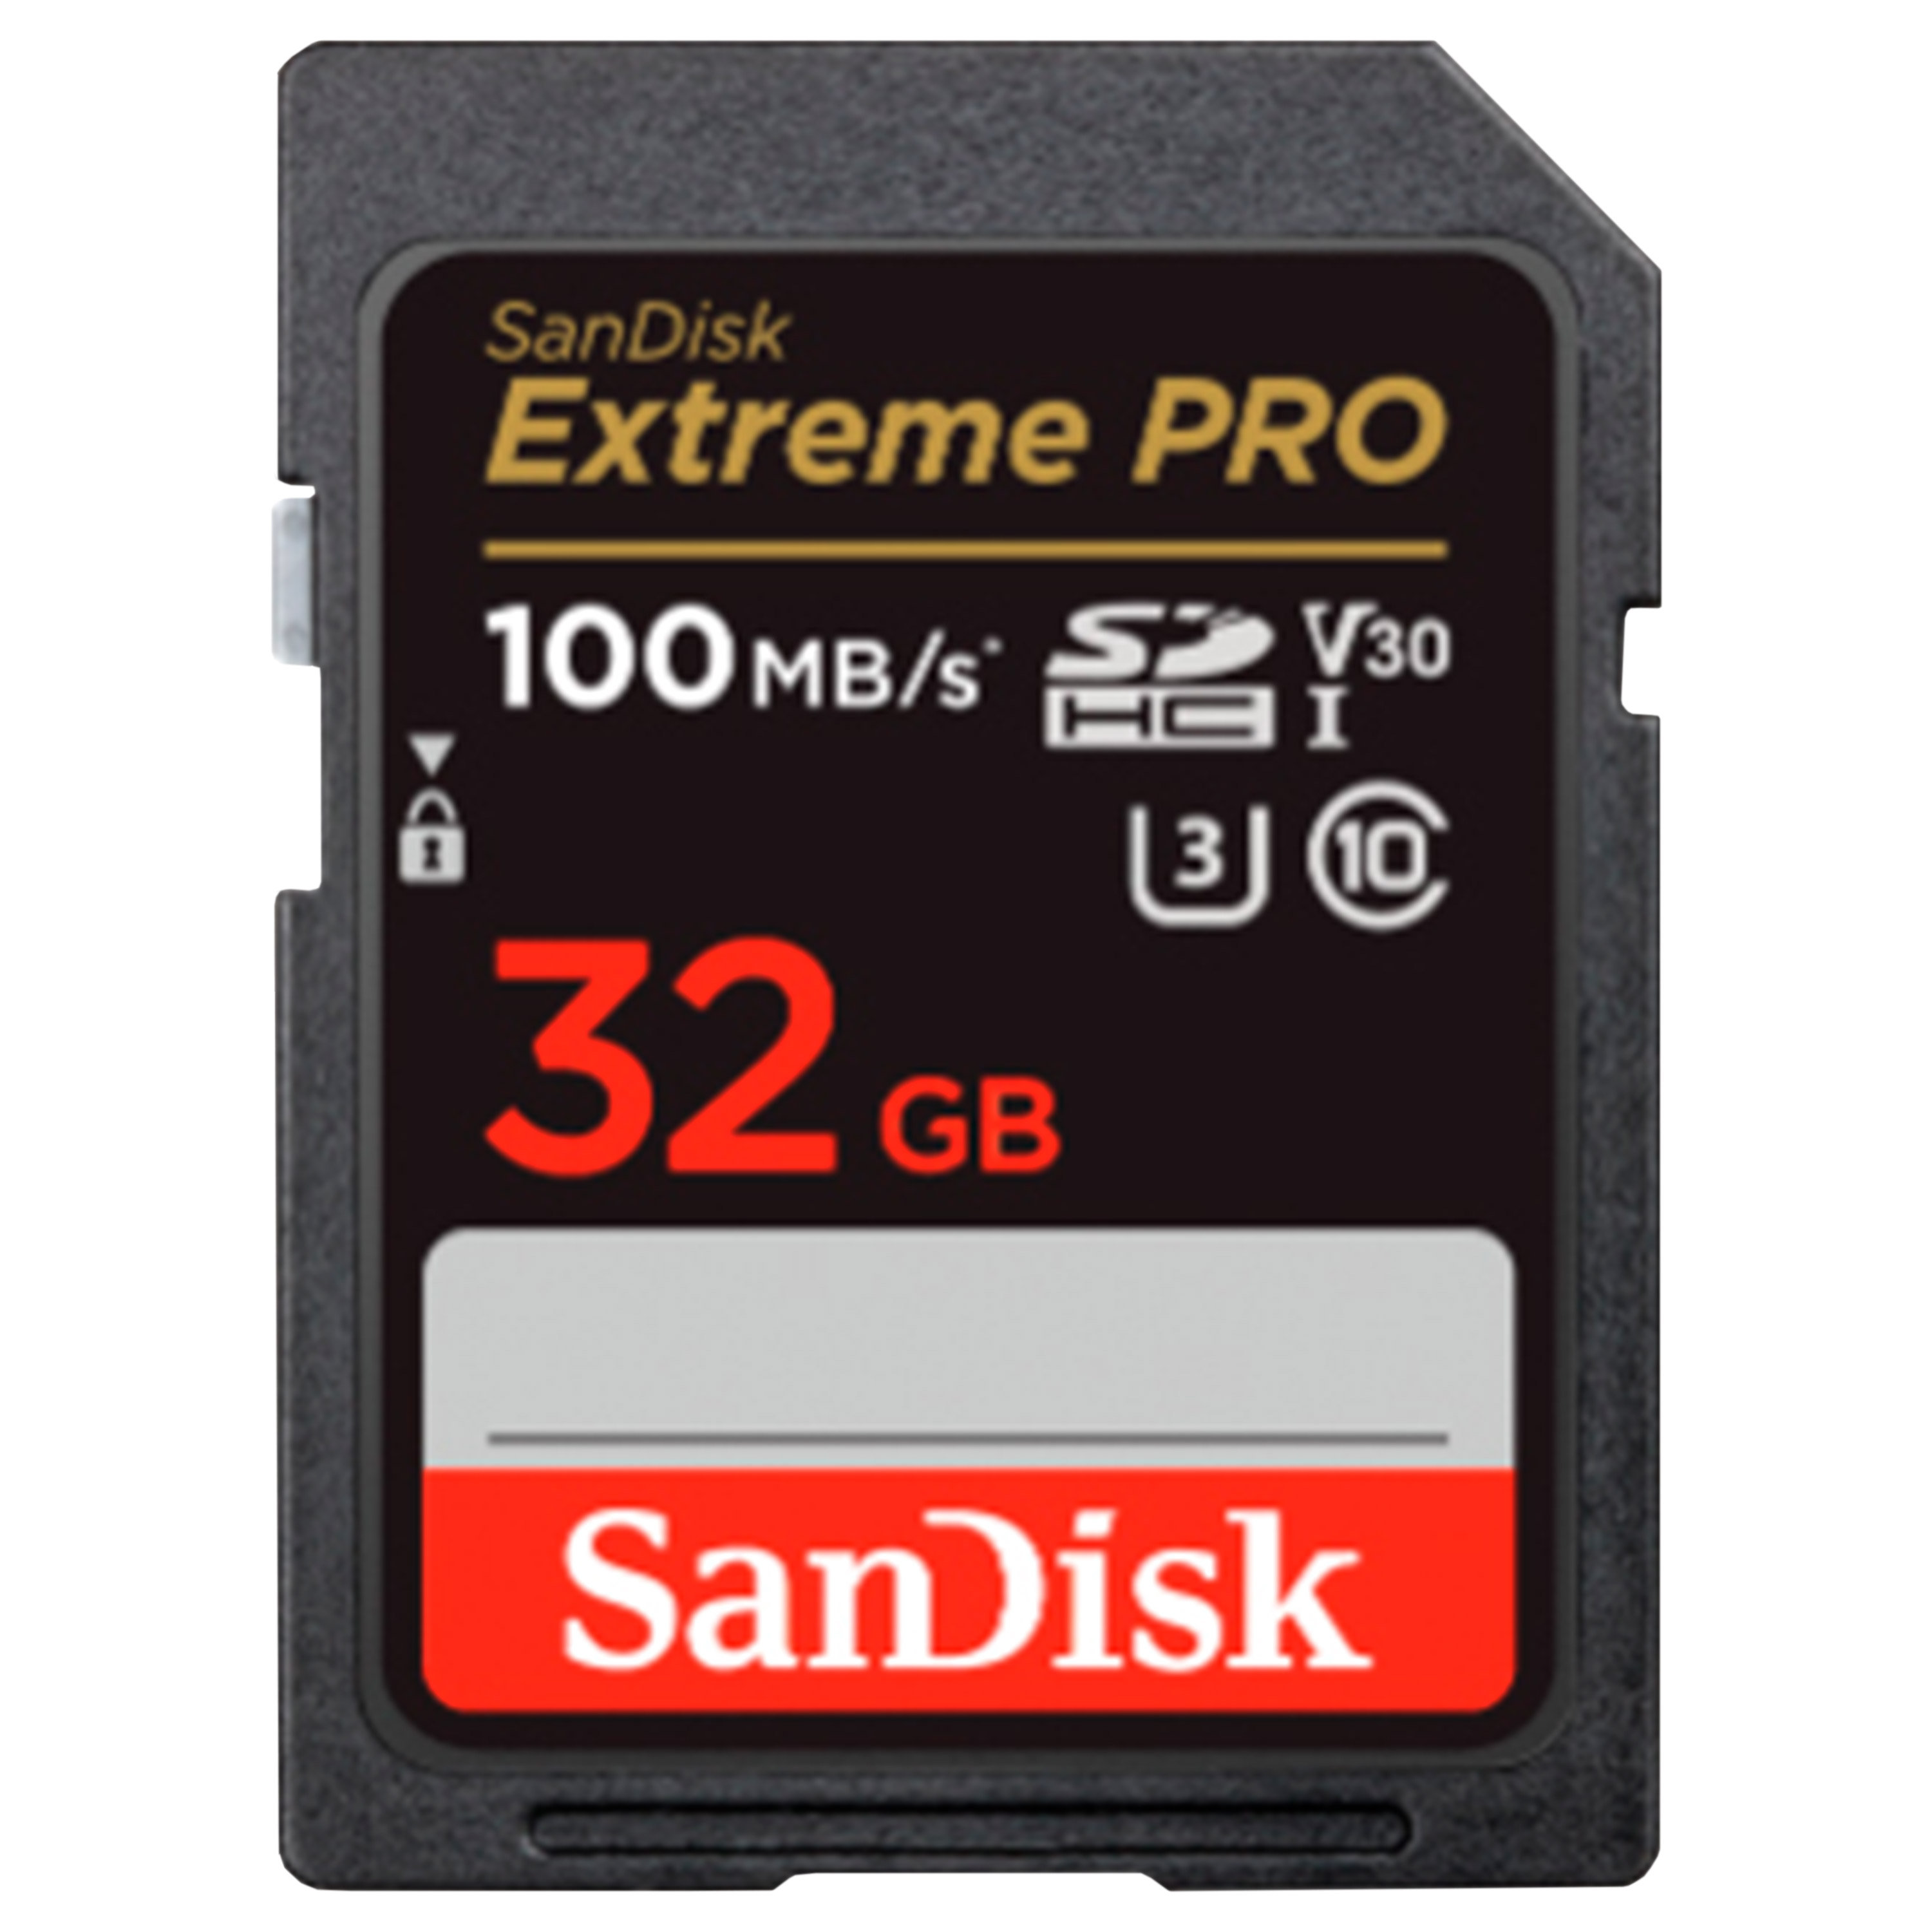 Sandisk SDHC EXTREME PRO V30 32GB 100MB/S